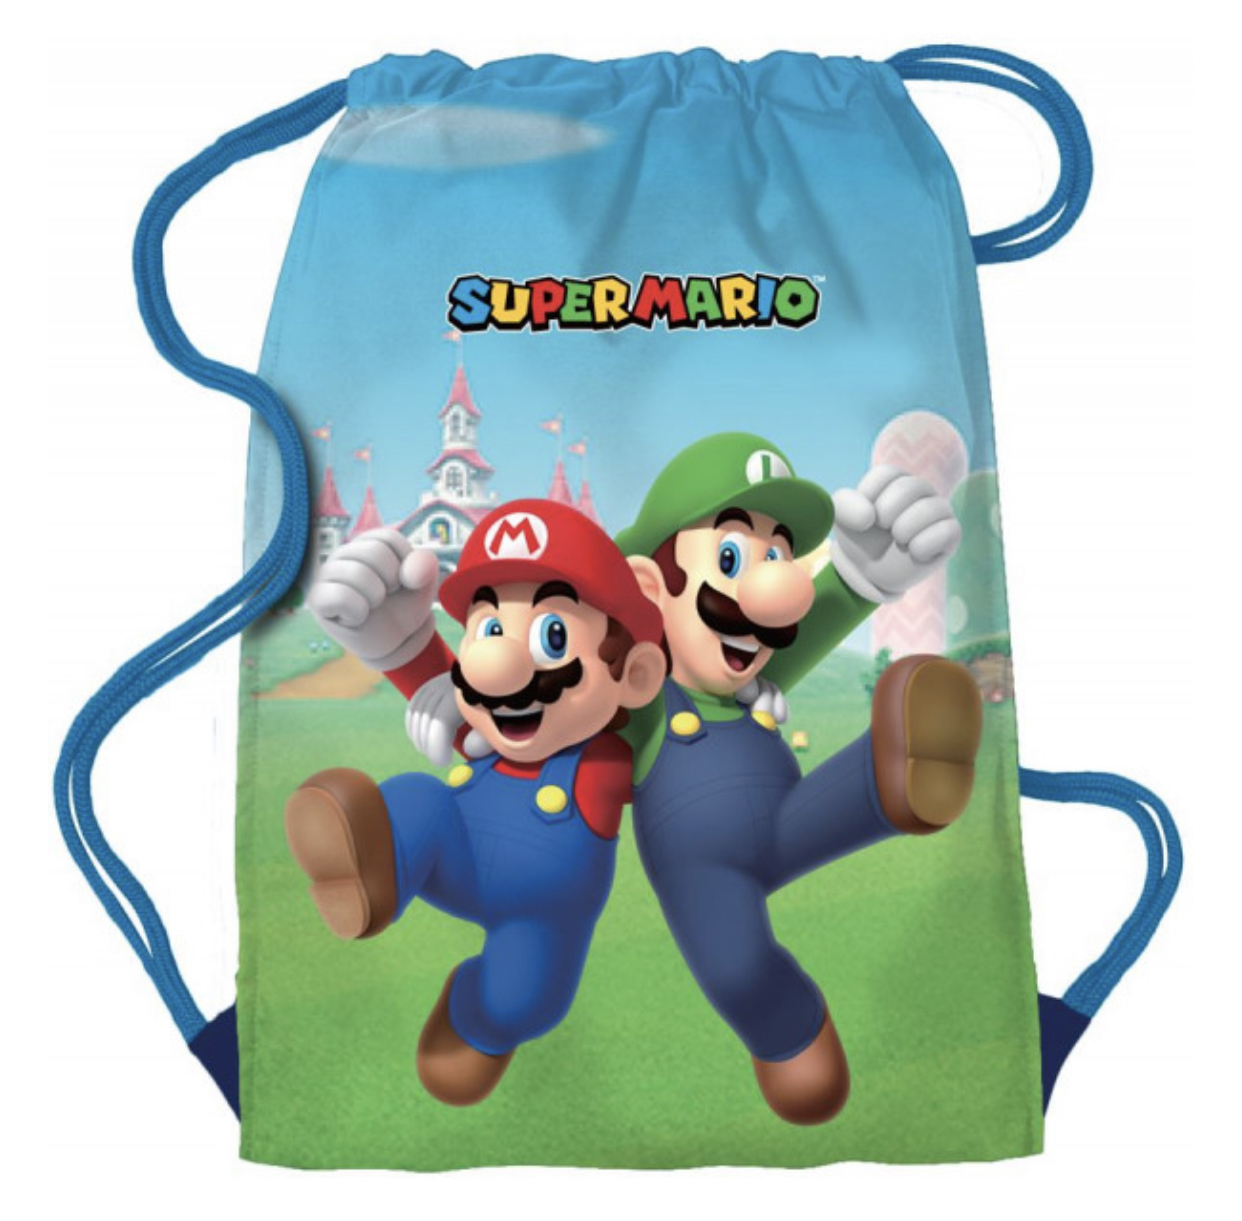 Super Mario Gymnastikbag från Smallstars.se